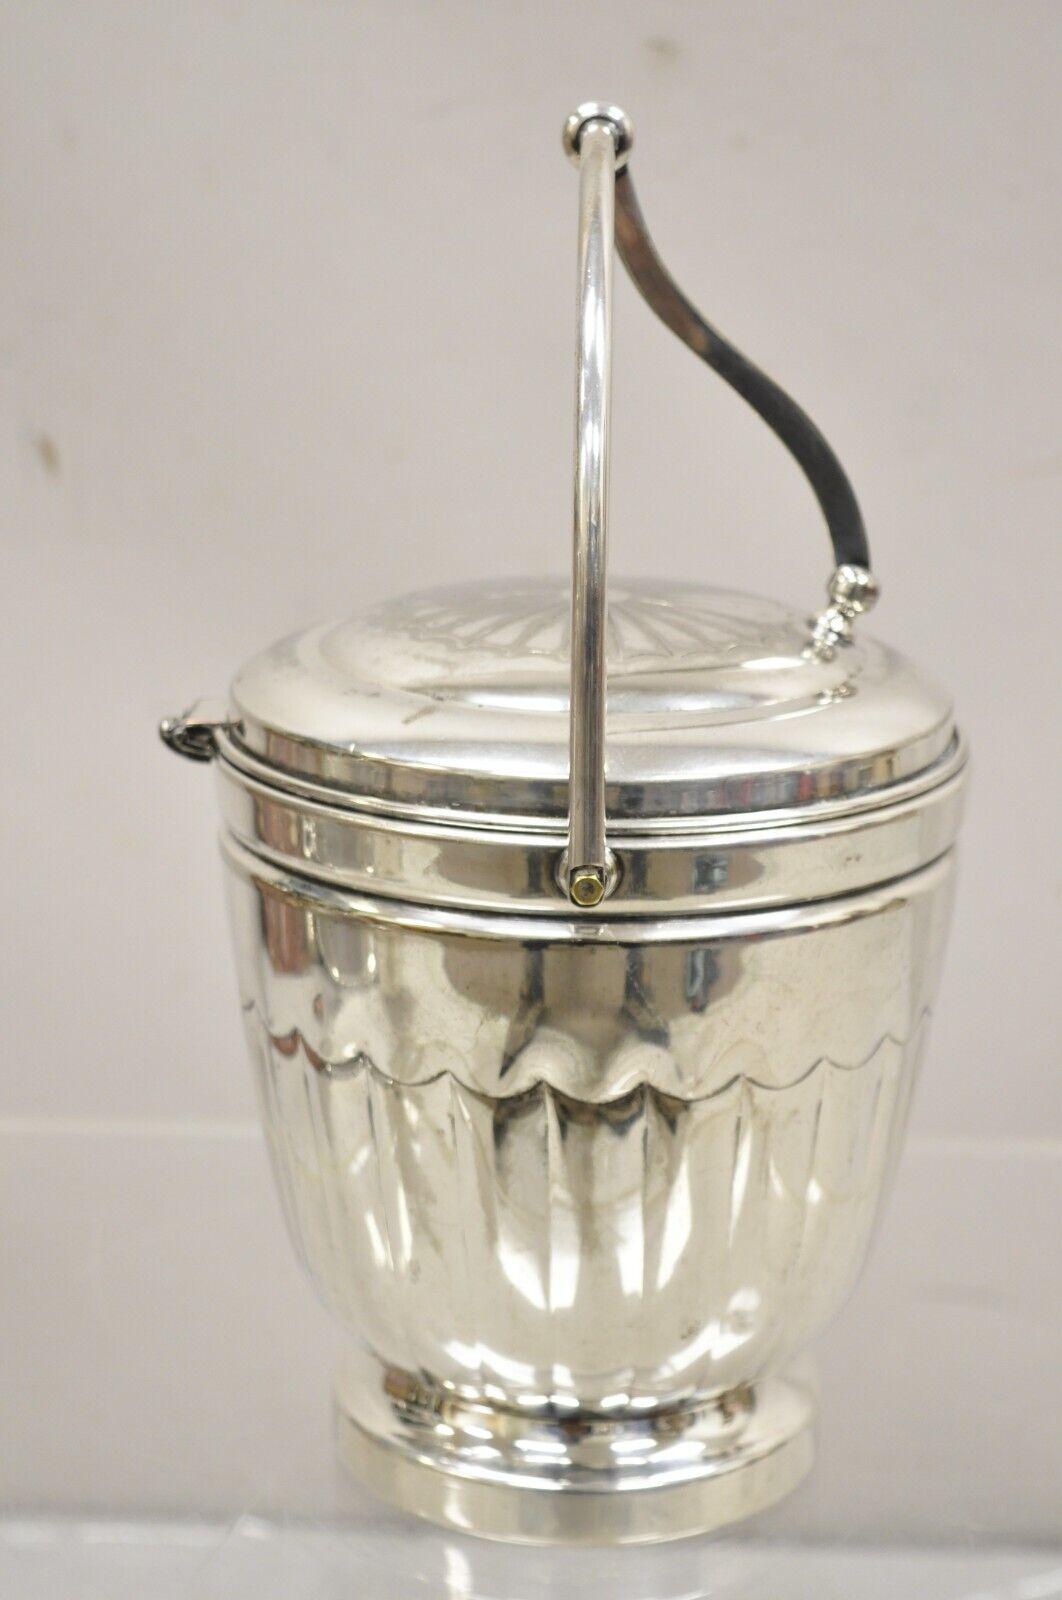 Seau à glace Vintage English Sheridan Silver Plated Reticulated Hinge Lid Lid. L'objet est doté d'un intérieur doublé de verre et d'un poinçon d'origine.
Circa Mid to late 20th Century. Dimensions : 13